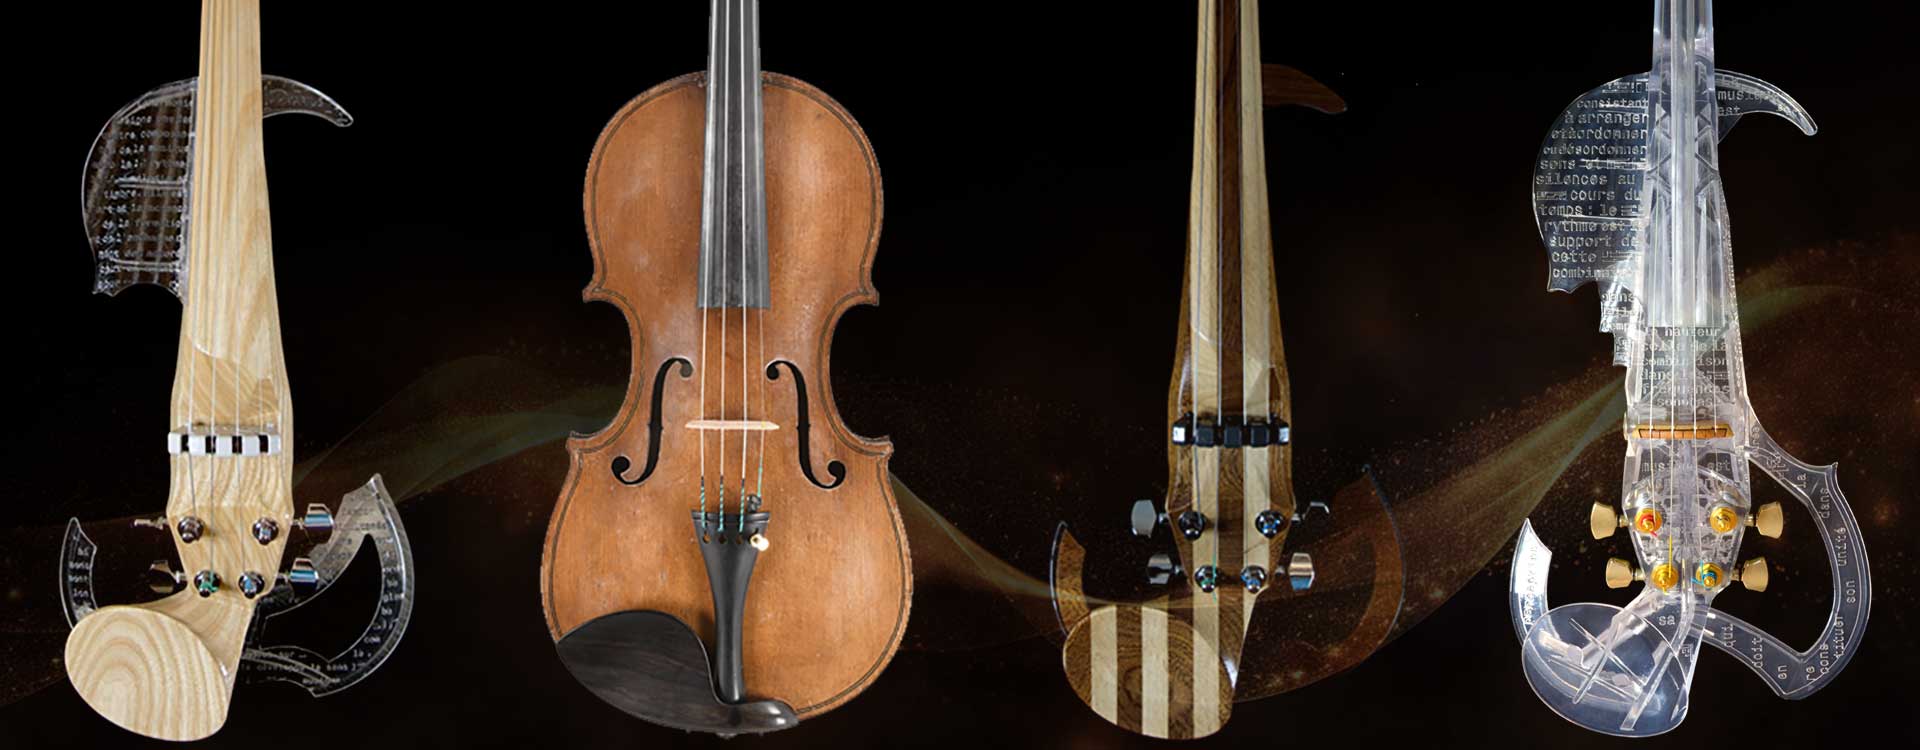 Comparaison entre uComparación entre un violín eléctrico y acústicon violon électrique et acoustique